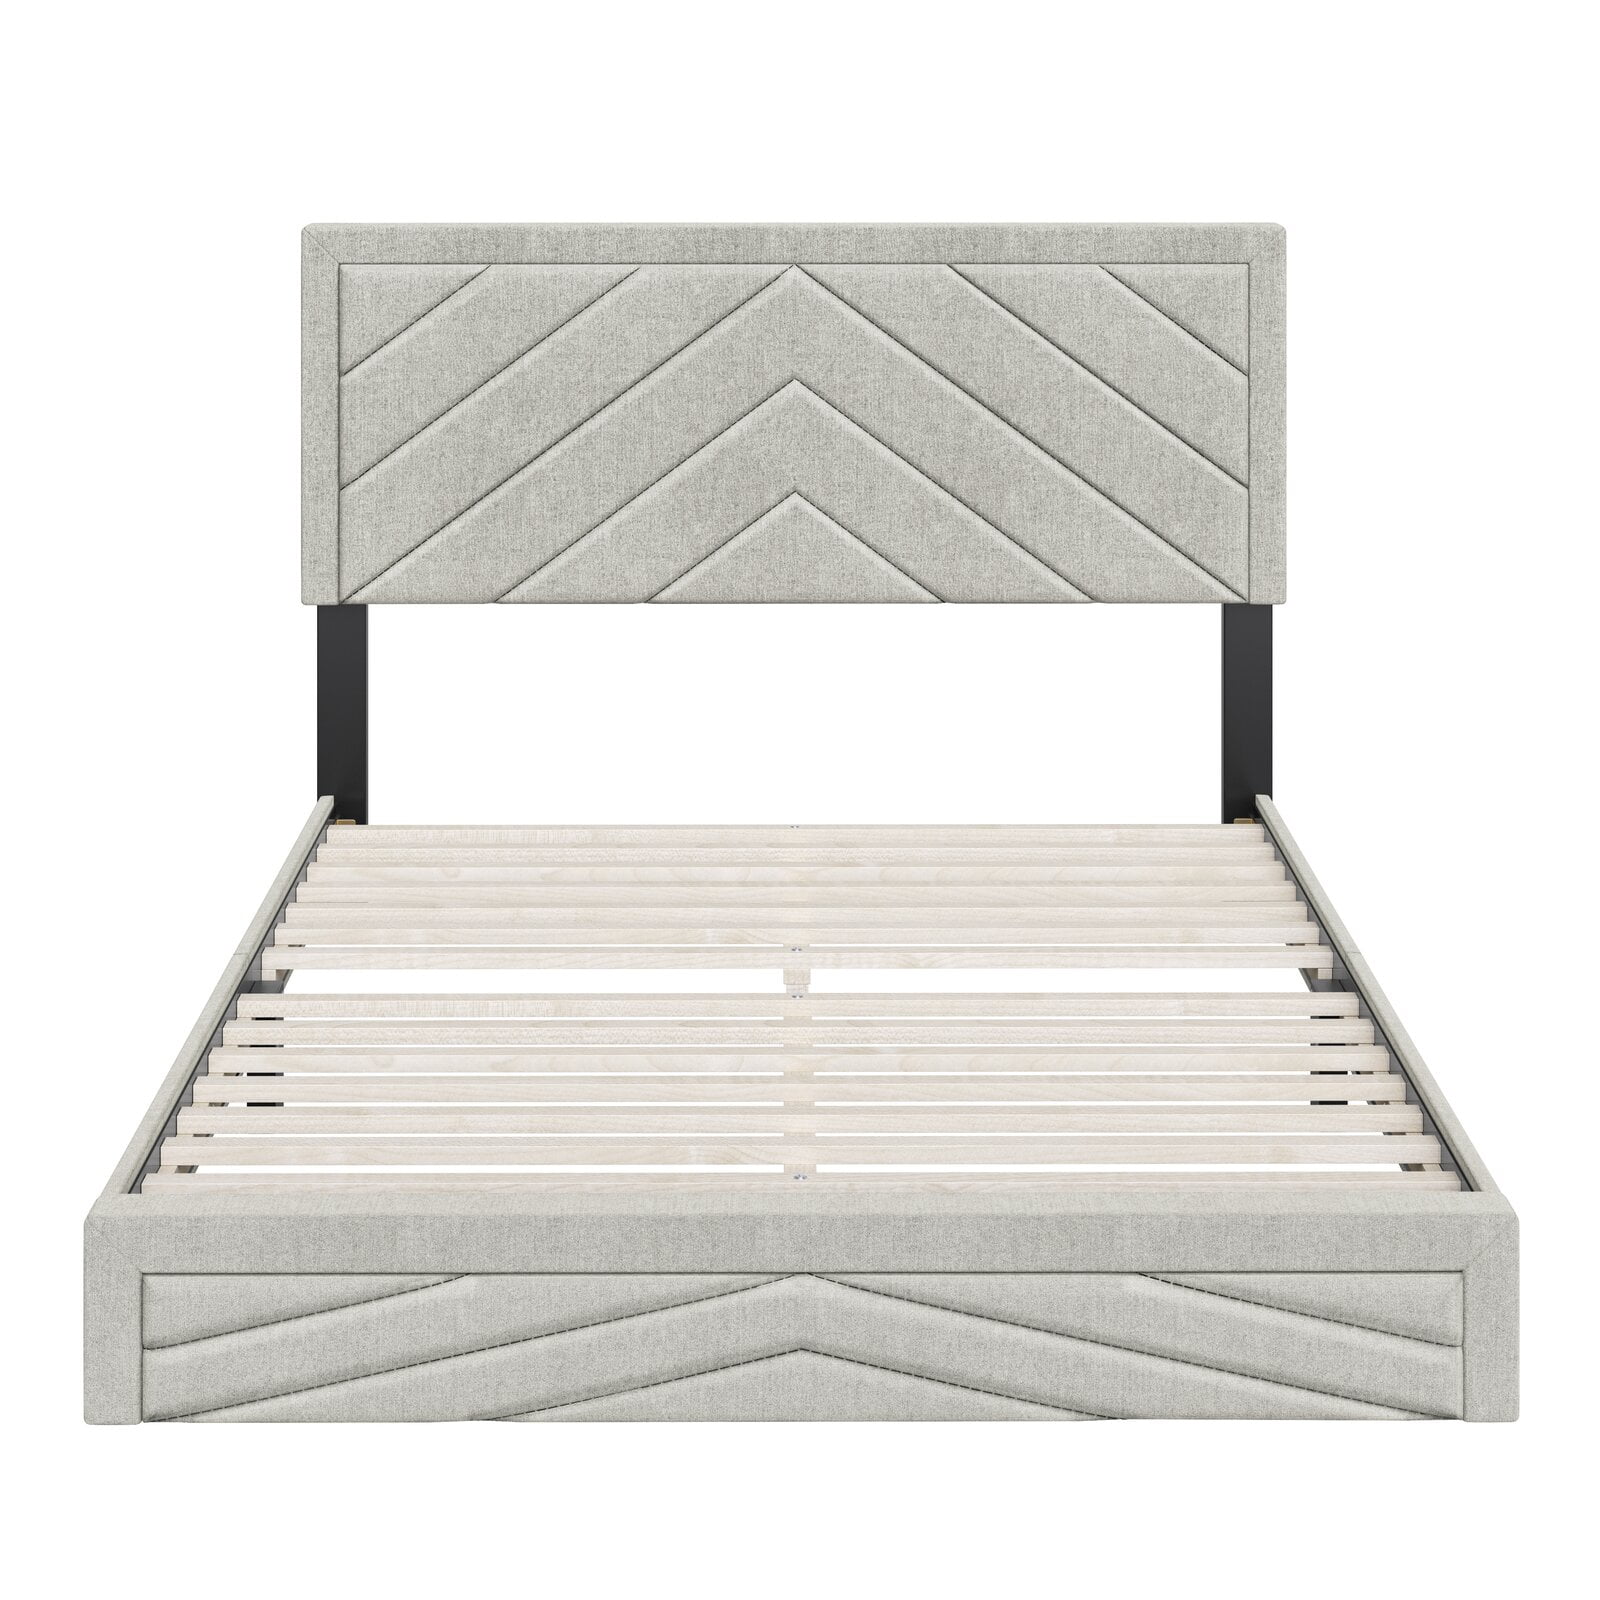 Lancelot Upholstered Low Profile Platform Bed, : 23'', Overall 86 lb. - Walmart.com